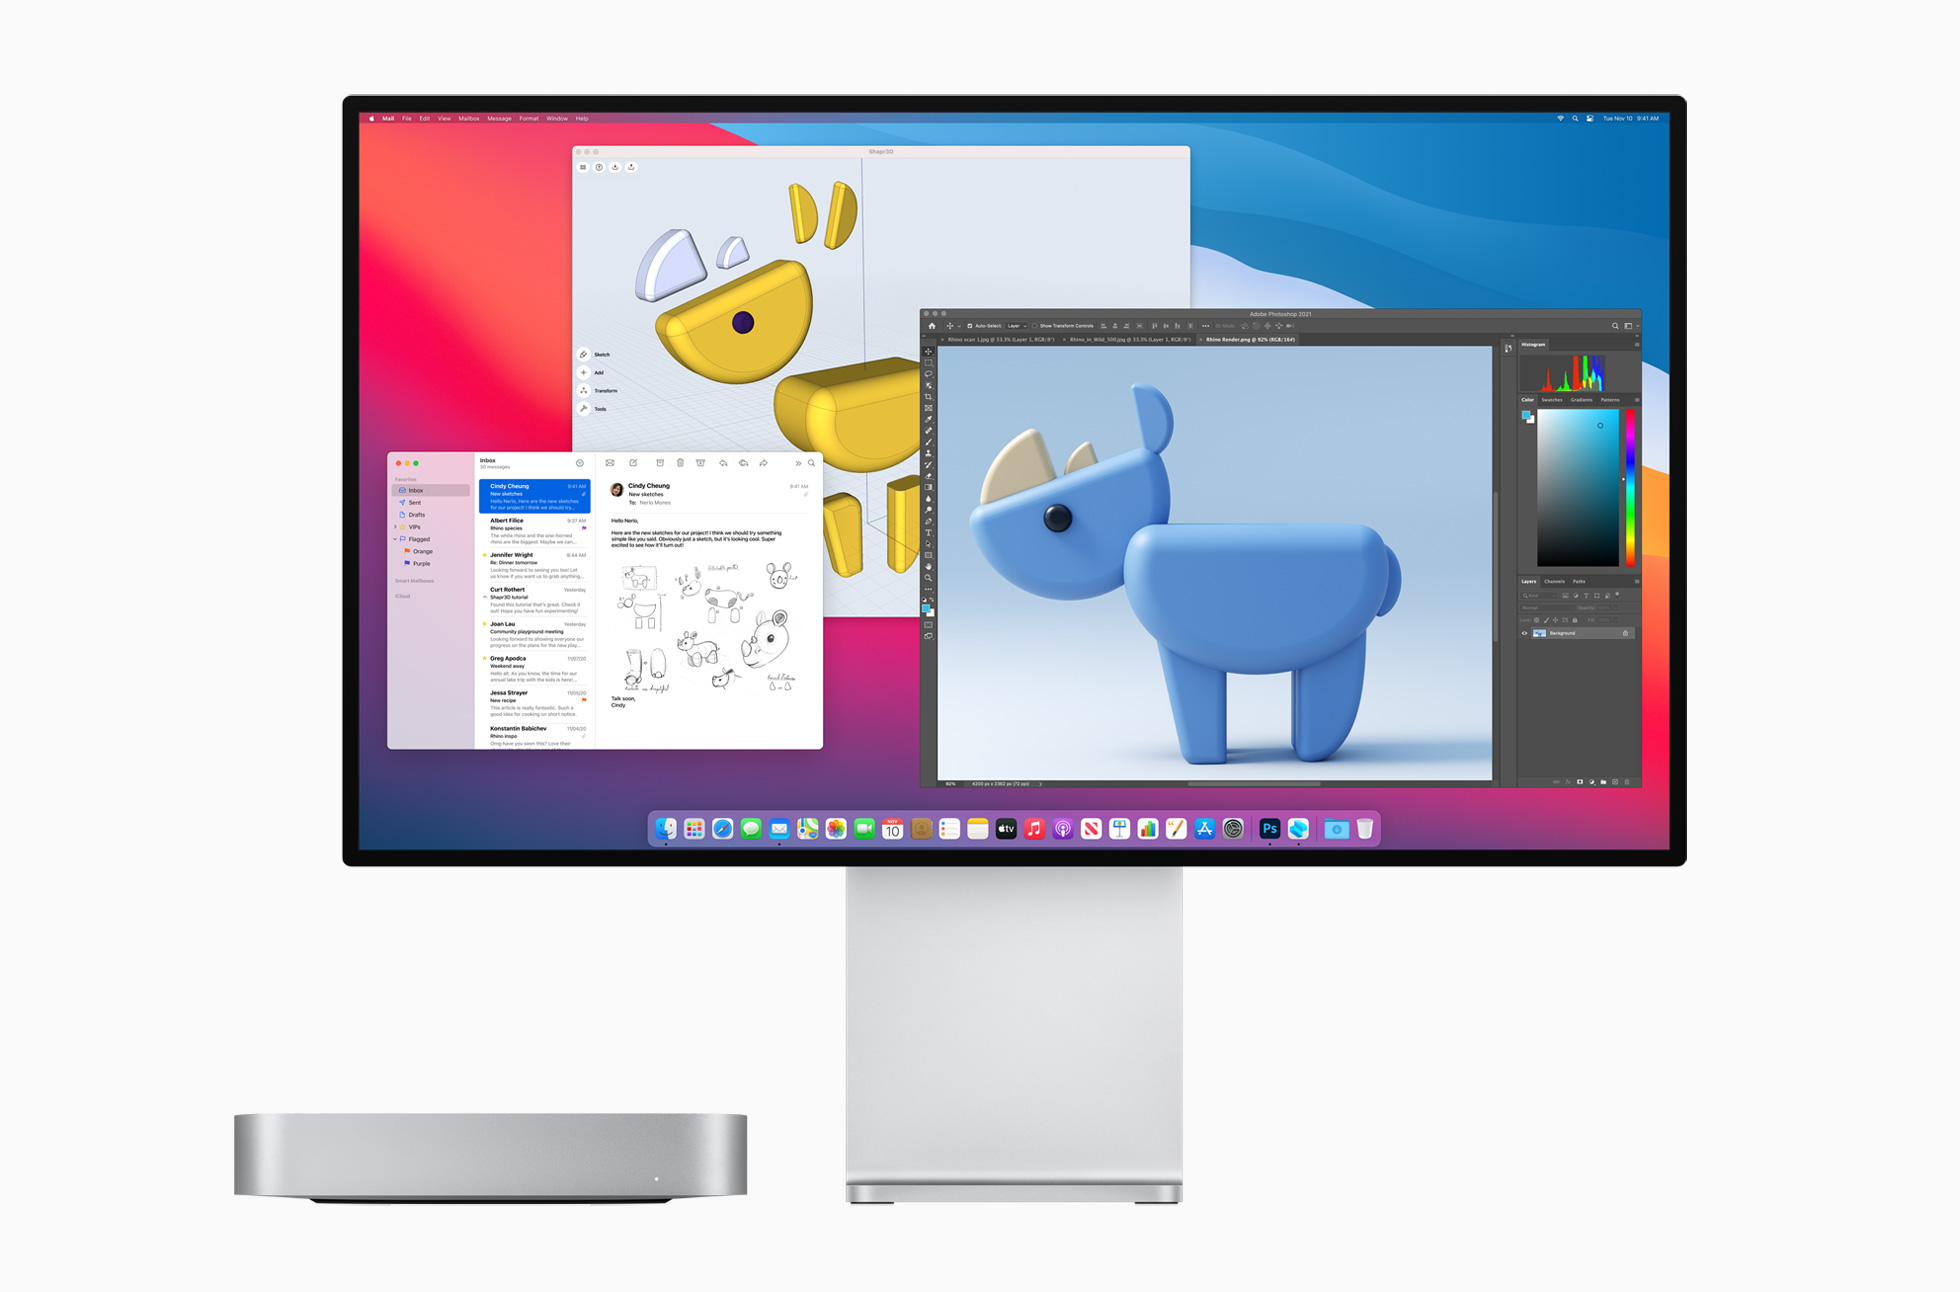 Apple new mac mini prodisplay bigsur